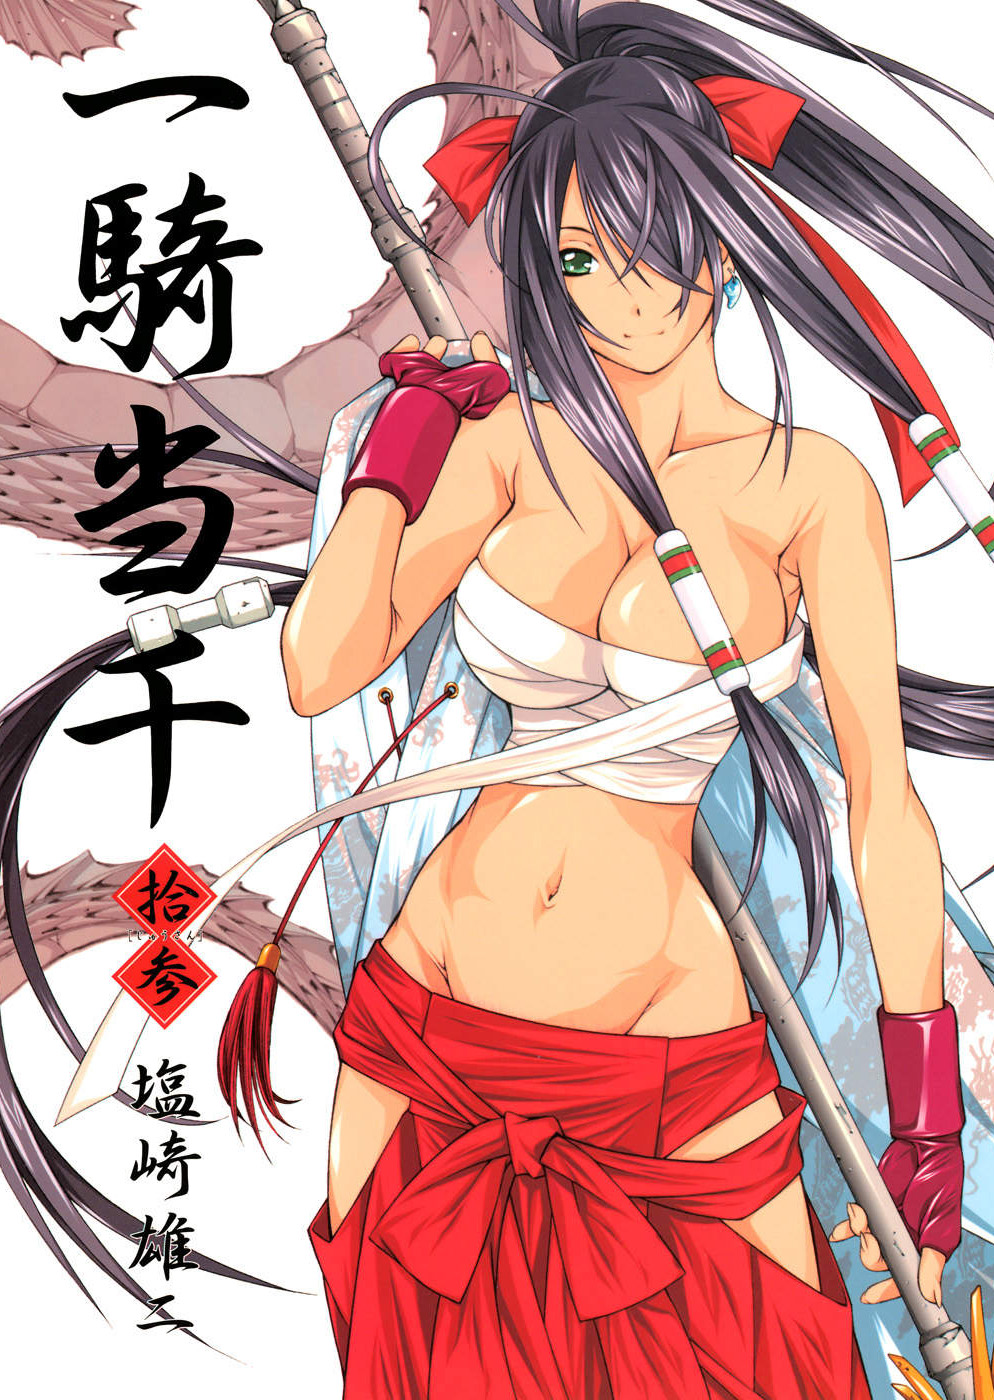 Battle Vixens (Ikkitousen) Manga